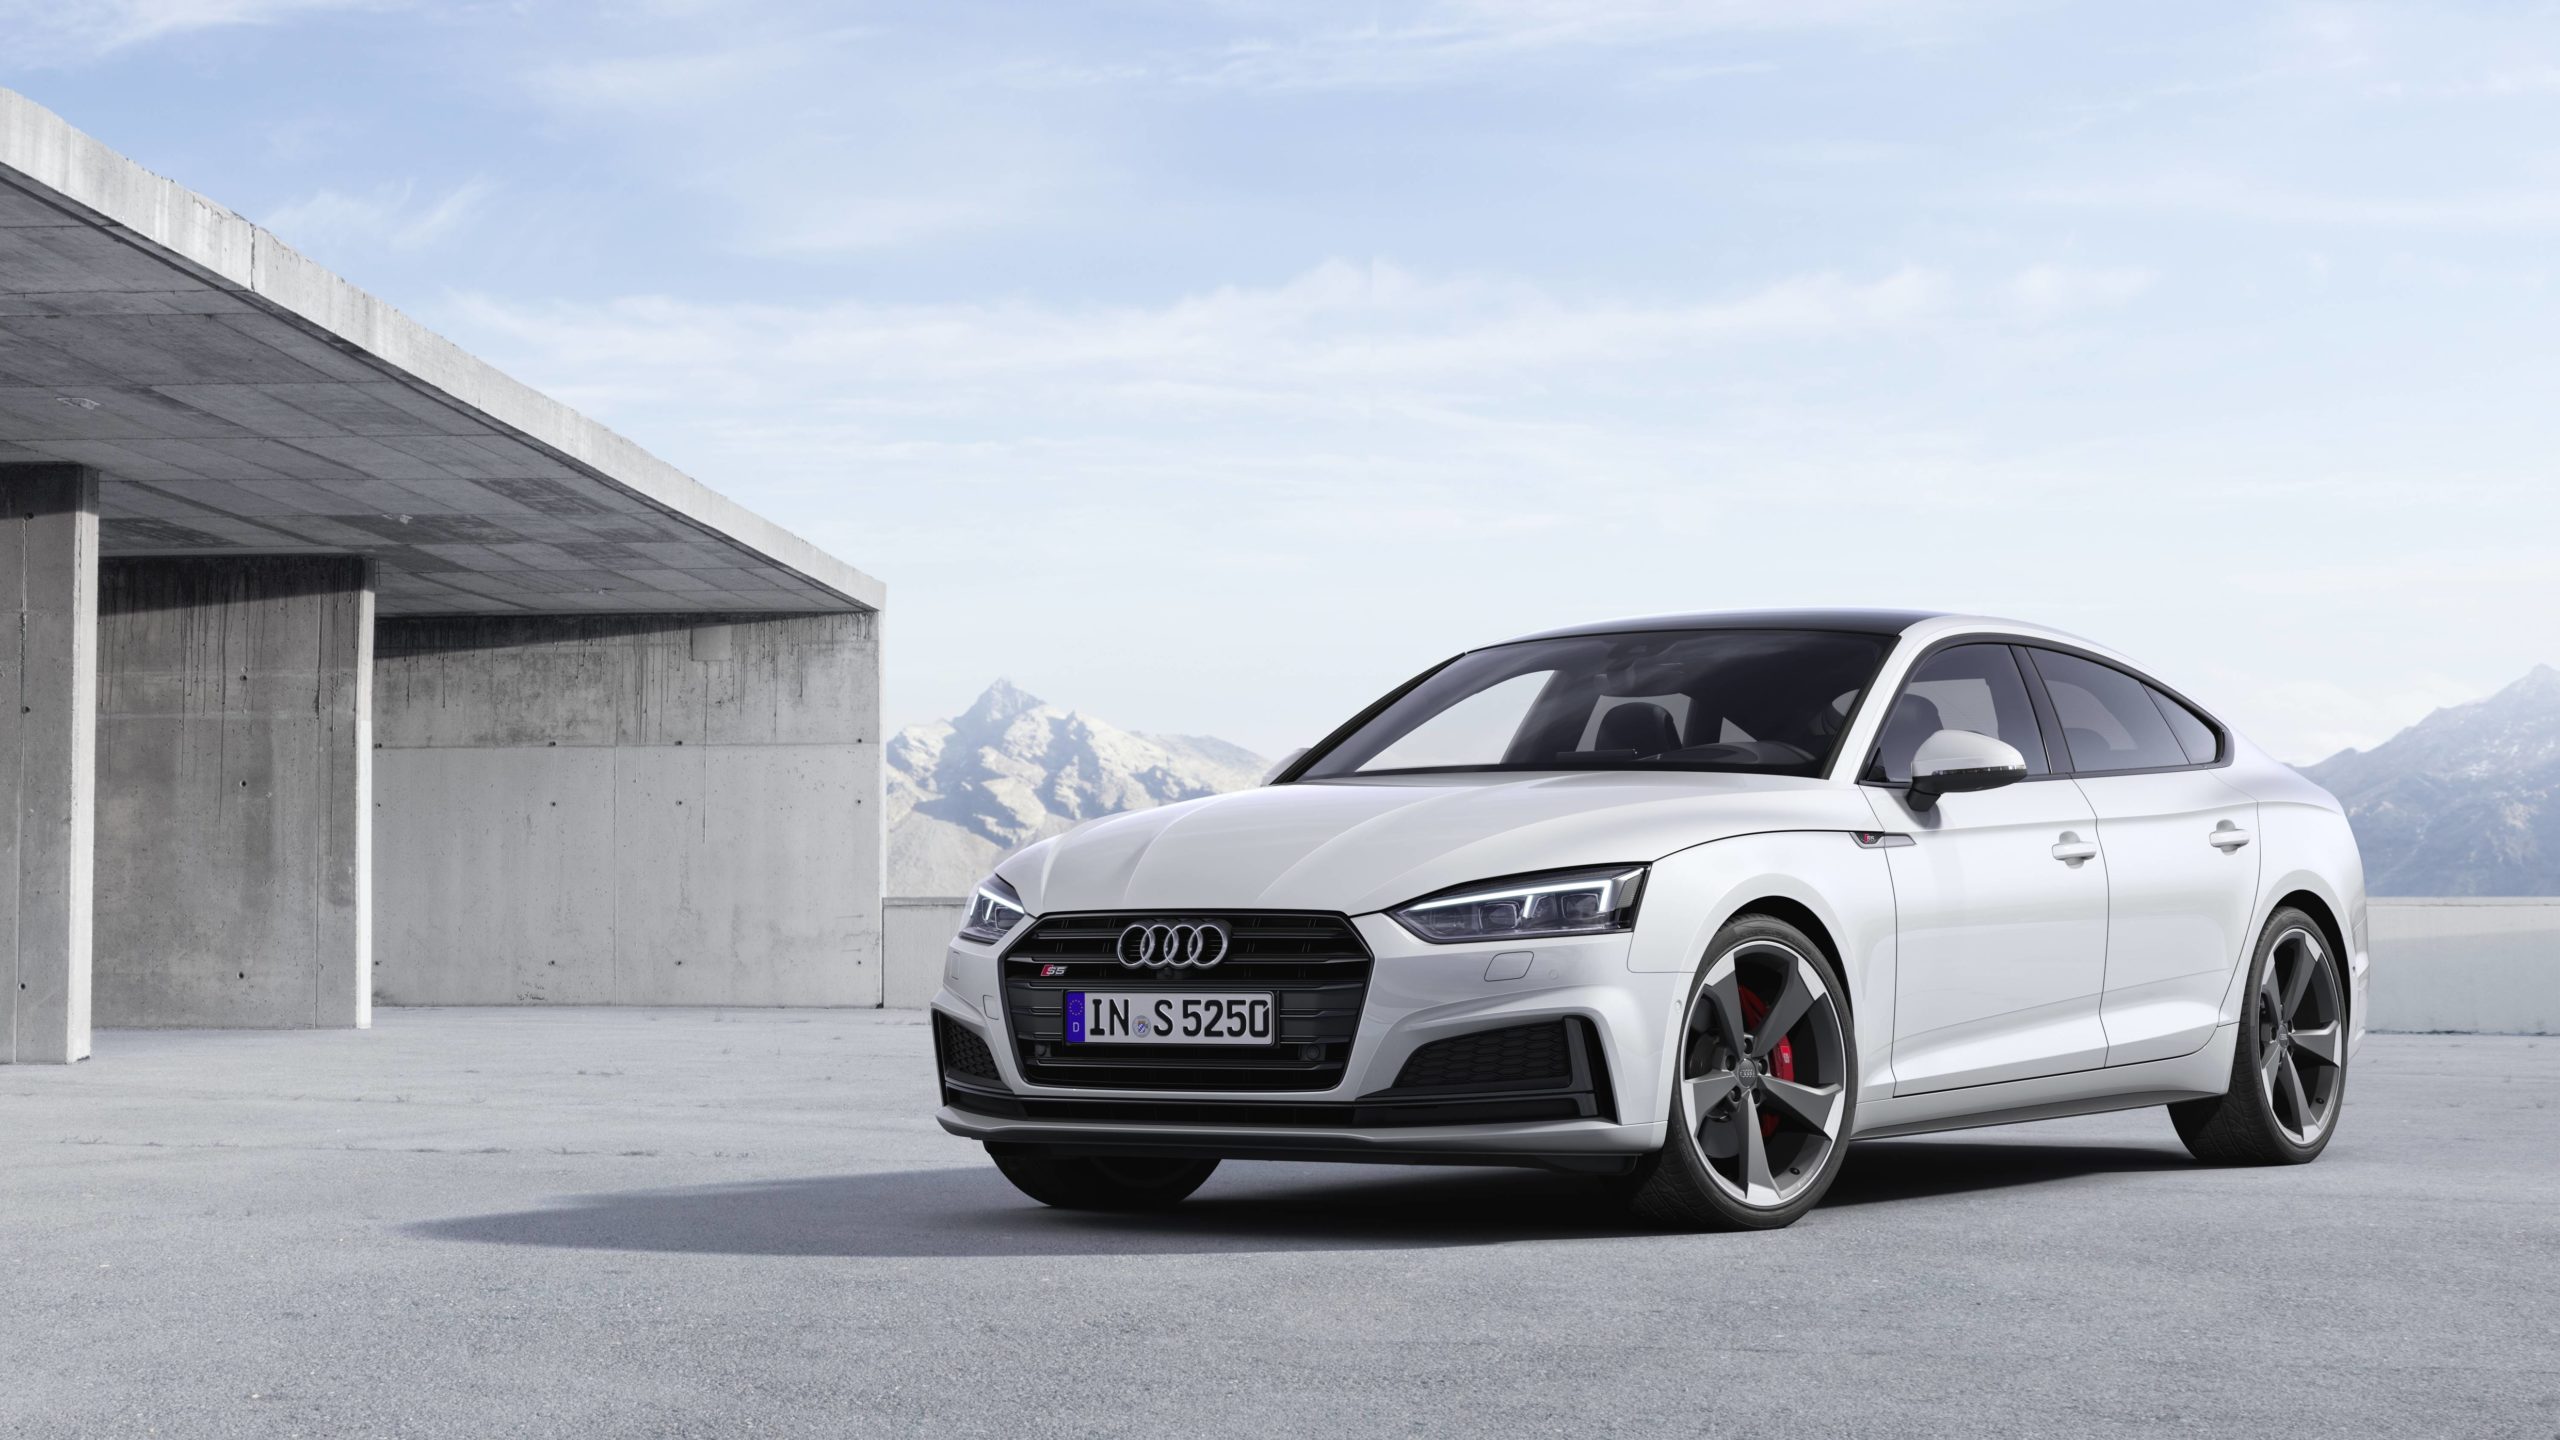 Les modèles Audi S5 désormais dotés d'un moteur TDI - Audi France ...